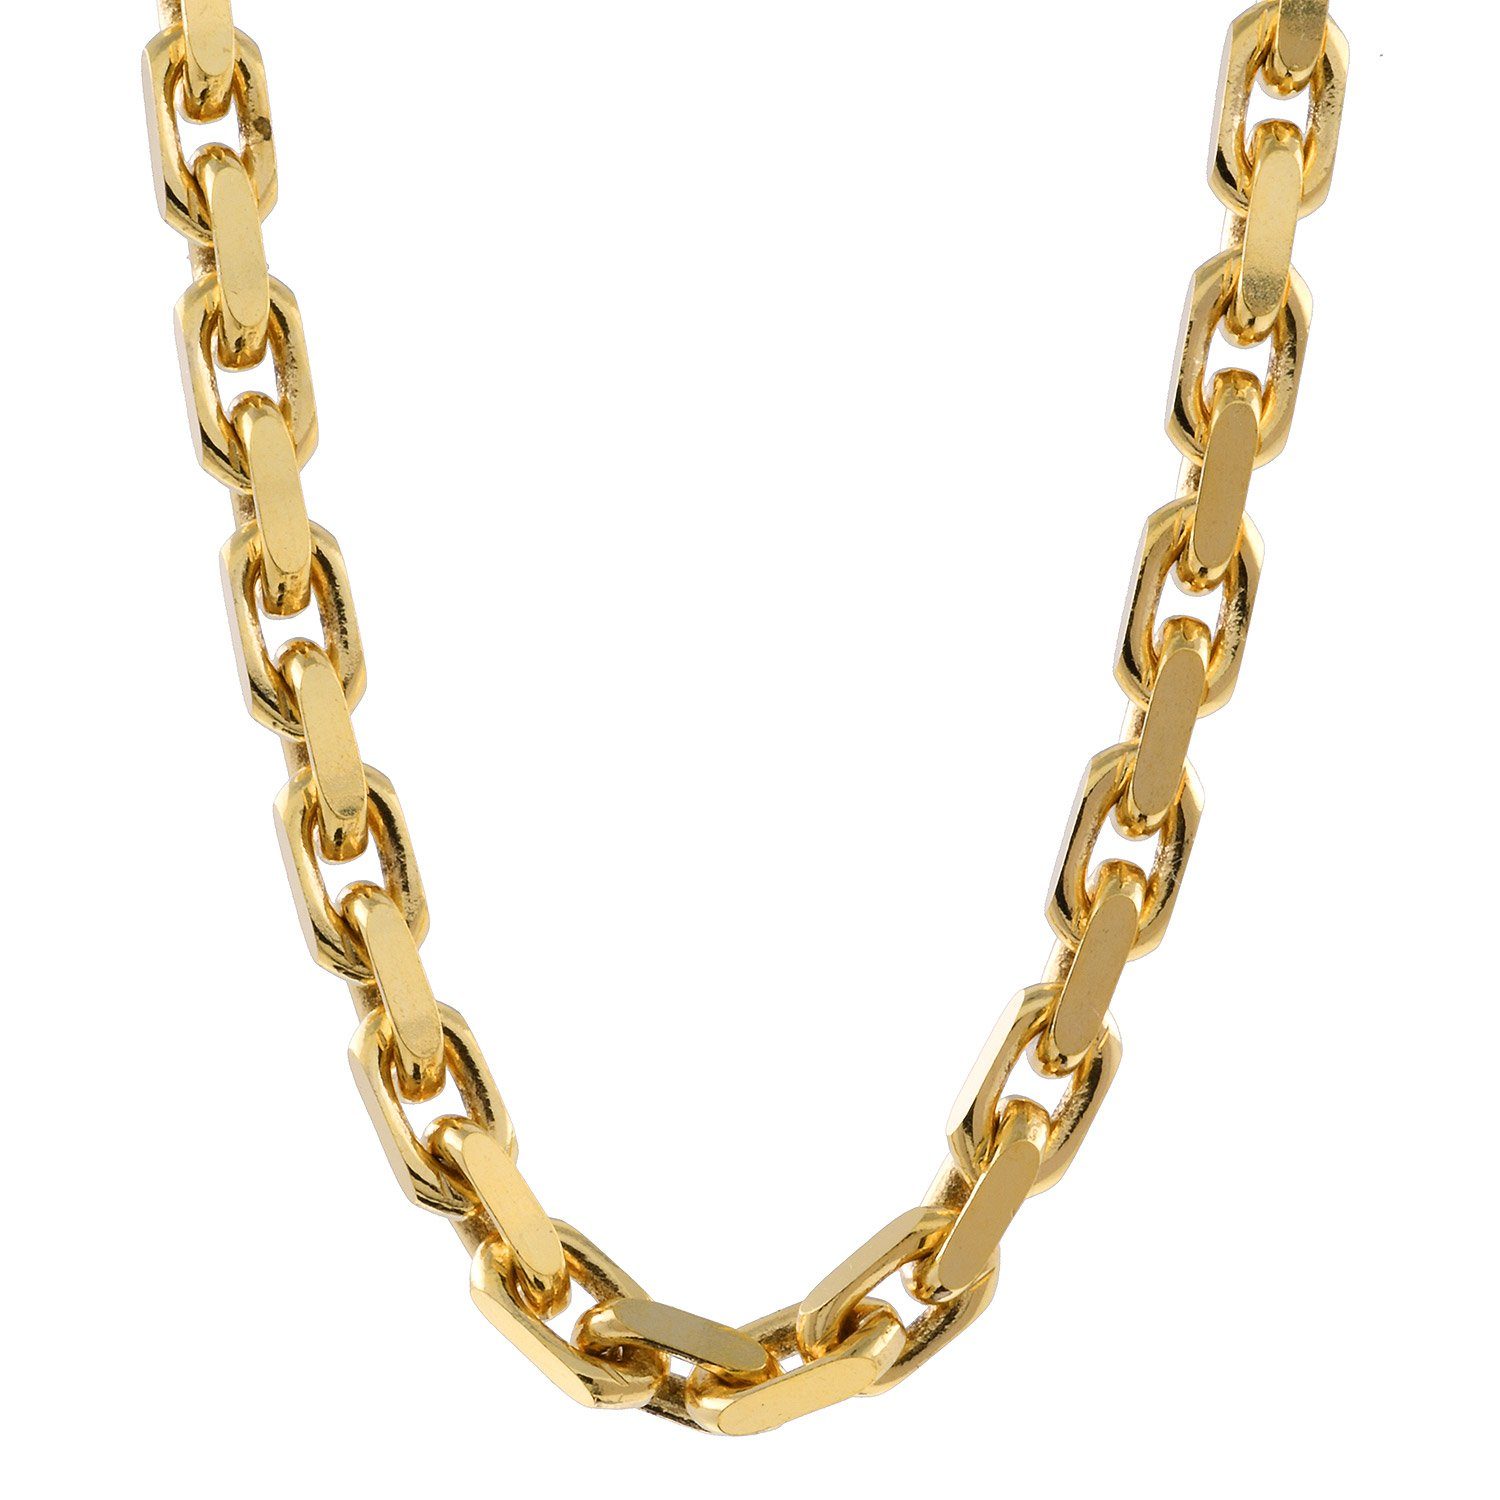 HOPLO Goldkette Ankerkette diamantiert Länge 55cm - Breite 2,5mm - 750-18 Karat Gold, Made in Germany